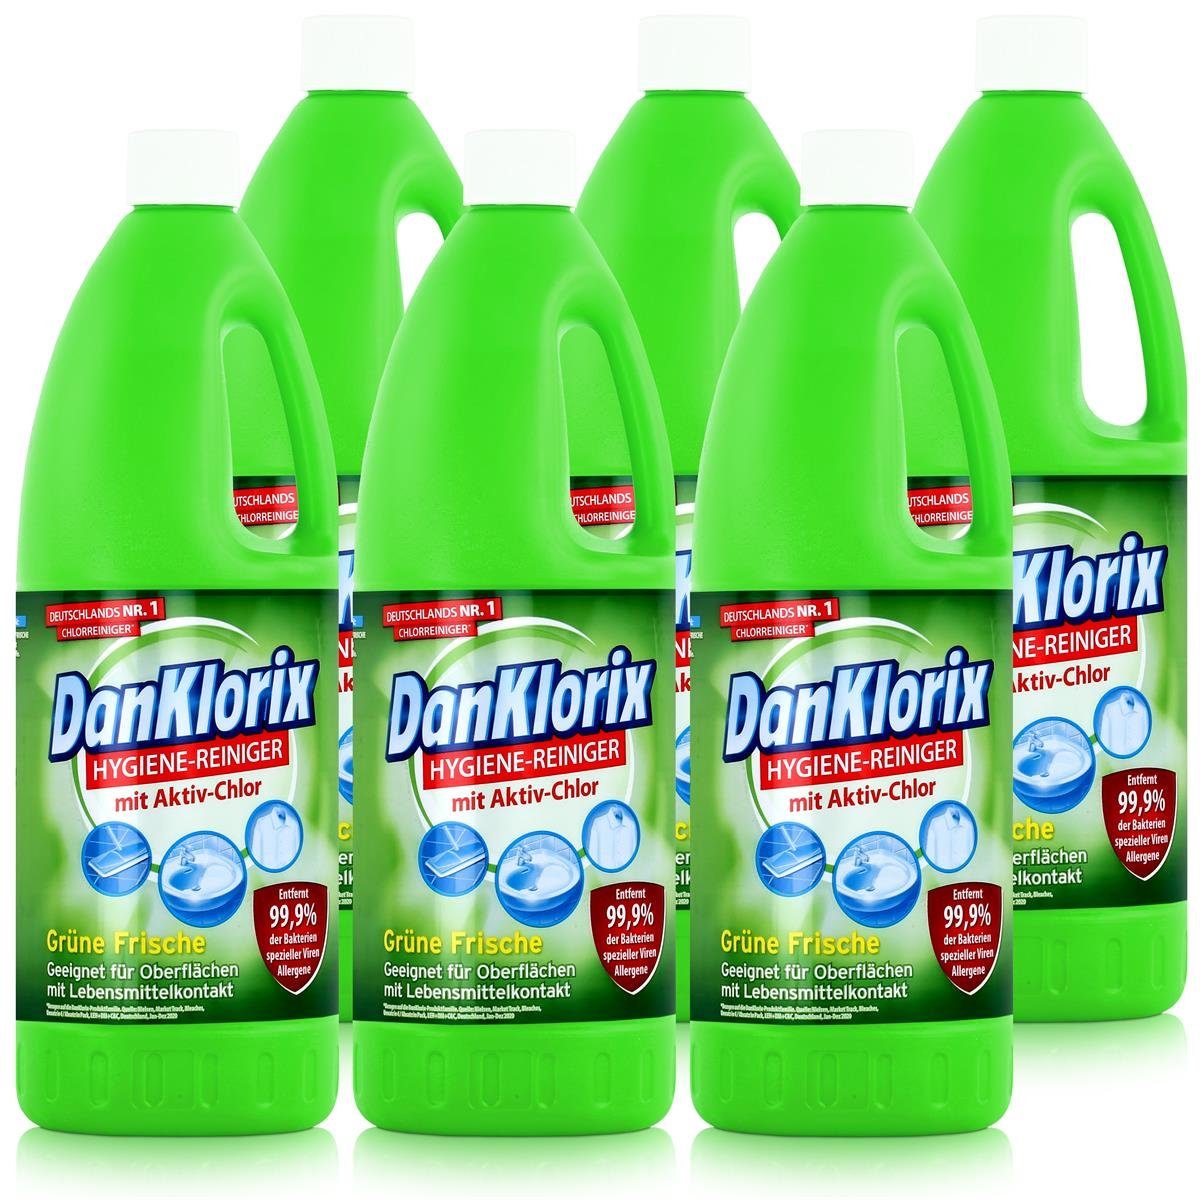 DanKlorix DanKlorix Hygiene-Reiniger Grüne Frische 1,5L - Mit Aktiv-Chlor (6er P Allzweckreiniger